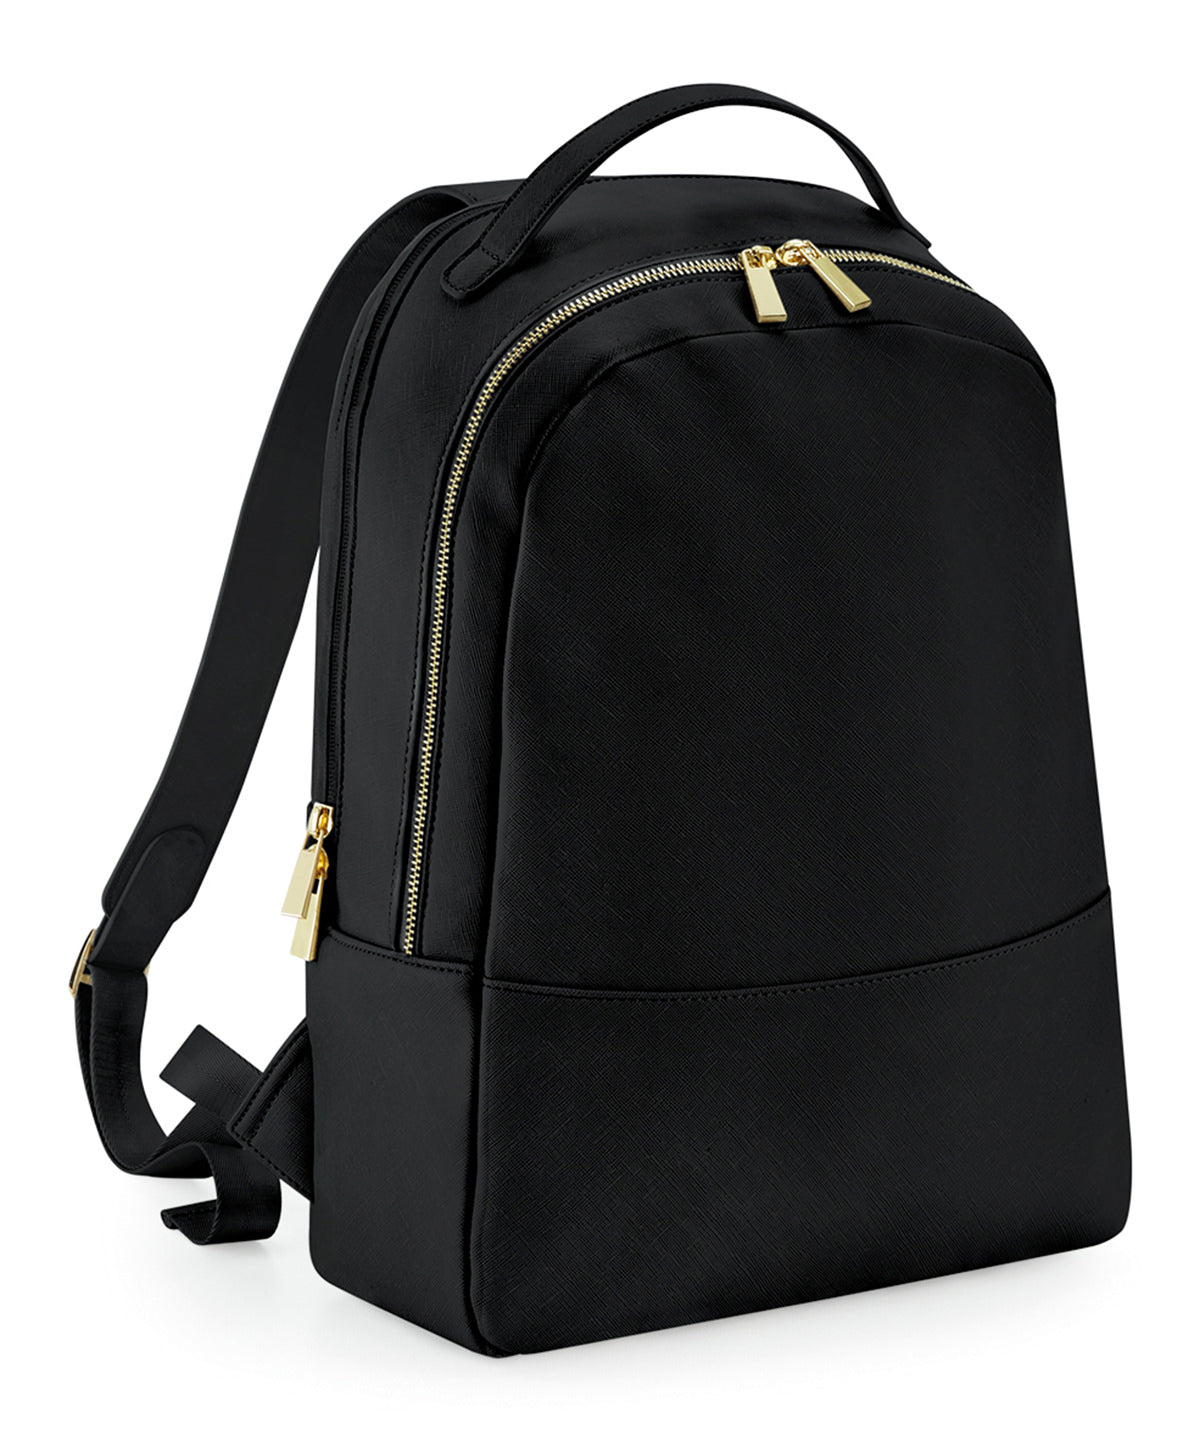 Töskur - Boutique Backpack